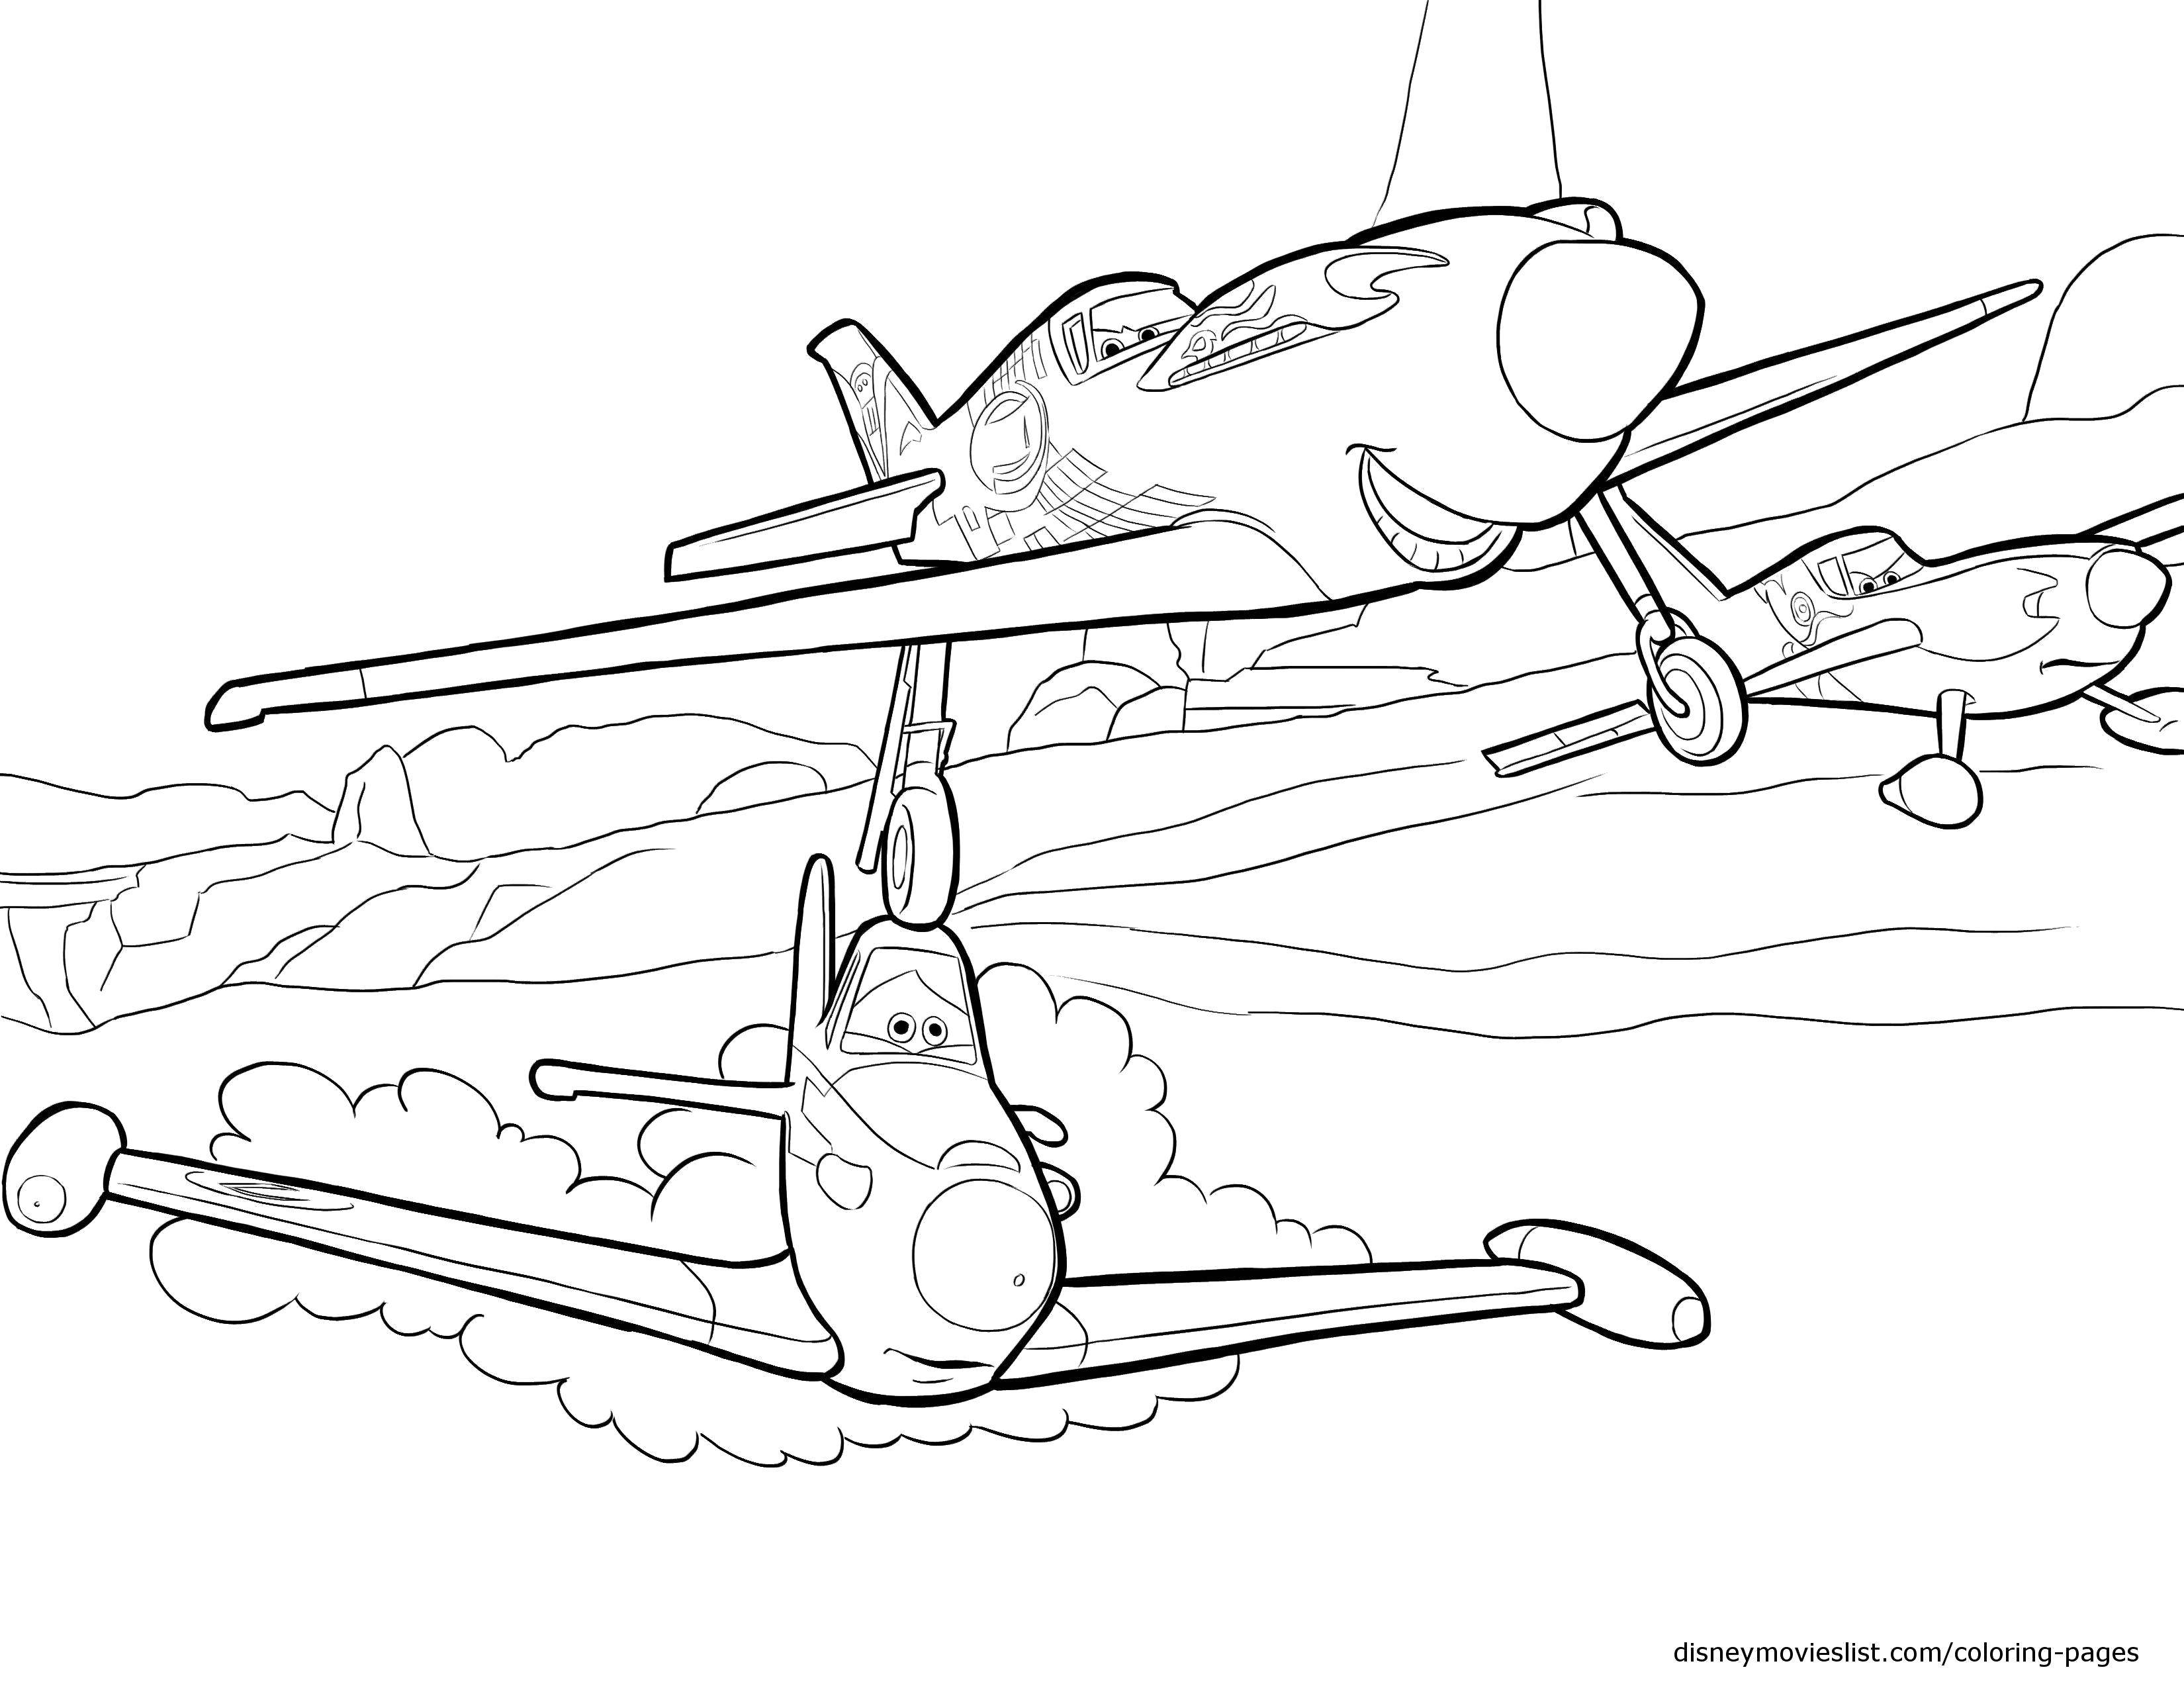 Название: Раскраска Мультфильм. Категория: Самолеты. Теги: Персонаж из мультфильма.